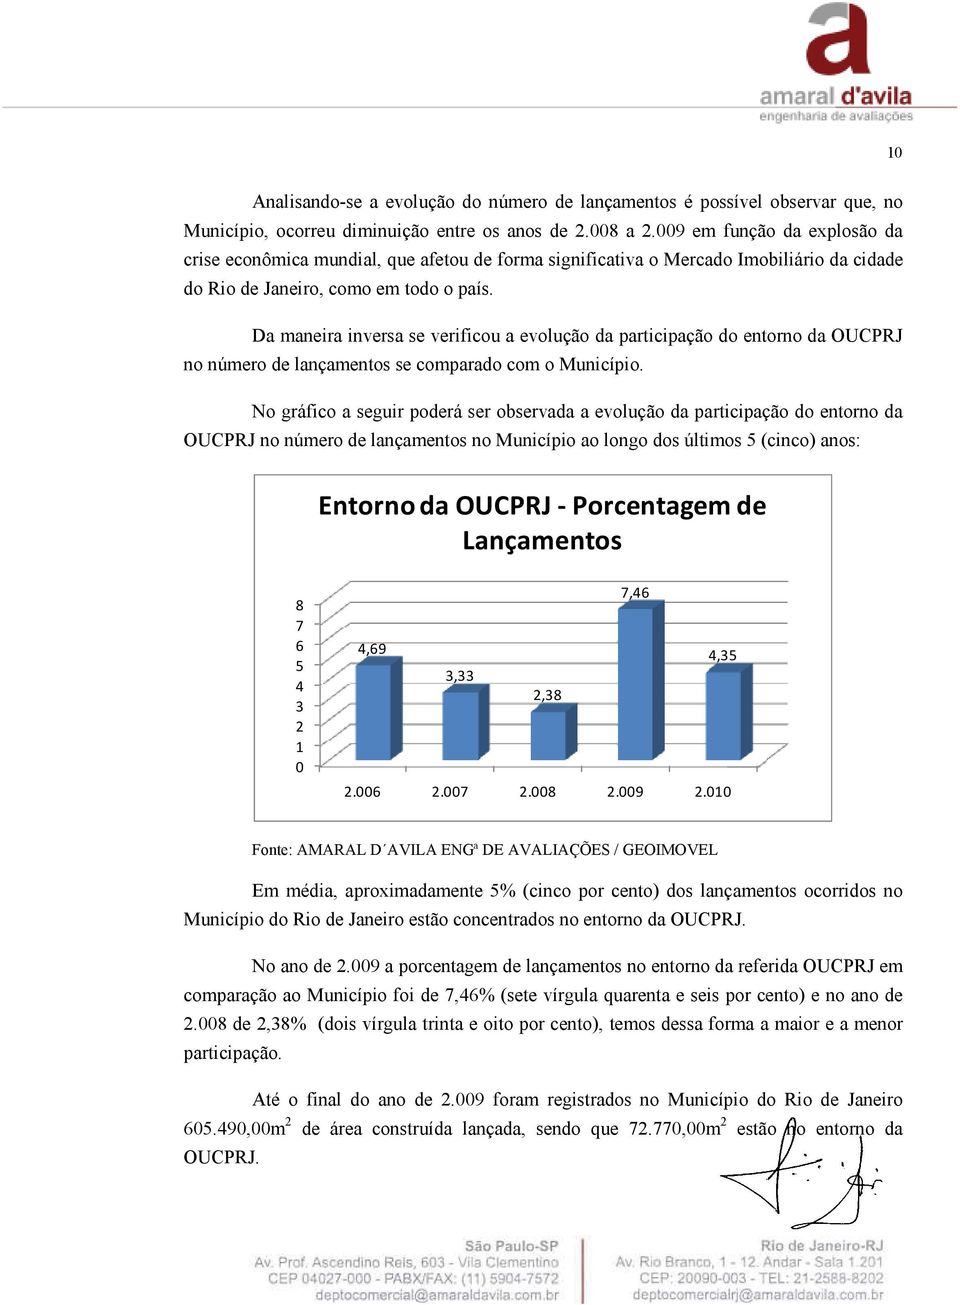 Da maneira inversa se verificou a evolução da participação do entorno da OUCPRJ no número de lançamentos se comparado com o Município.